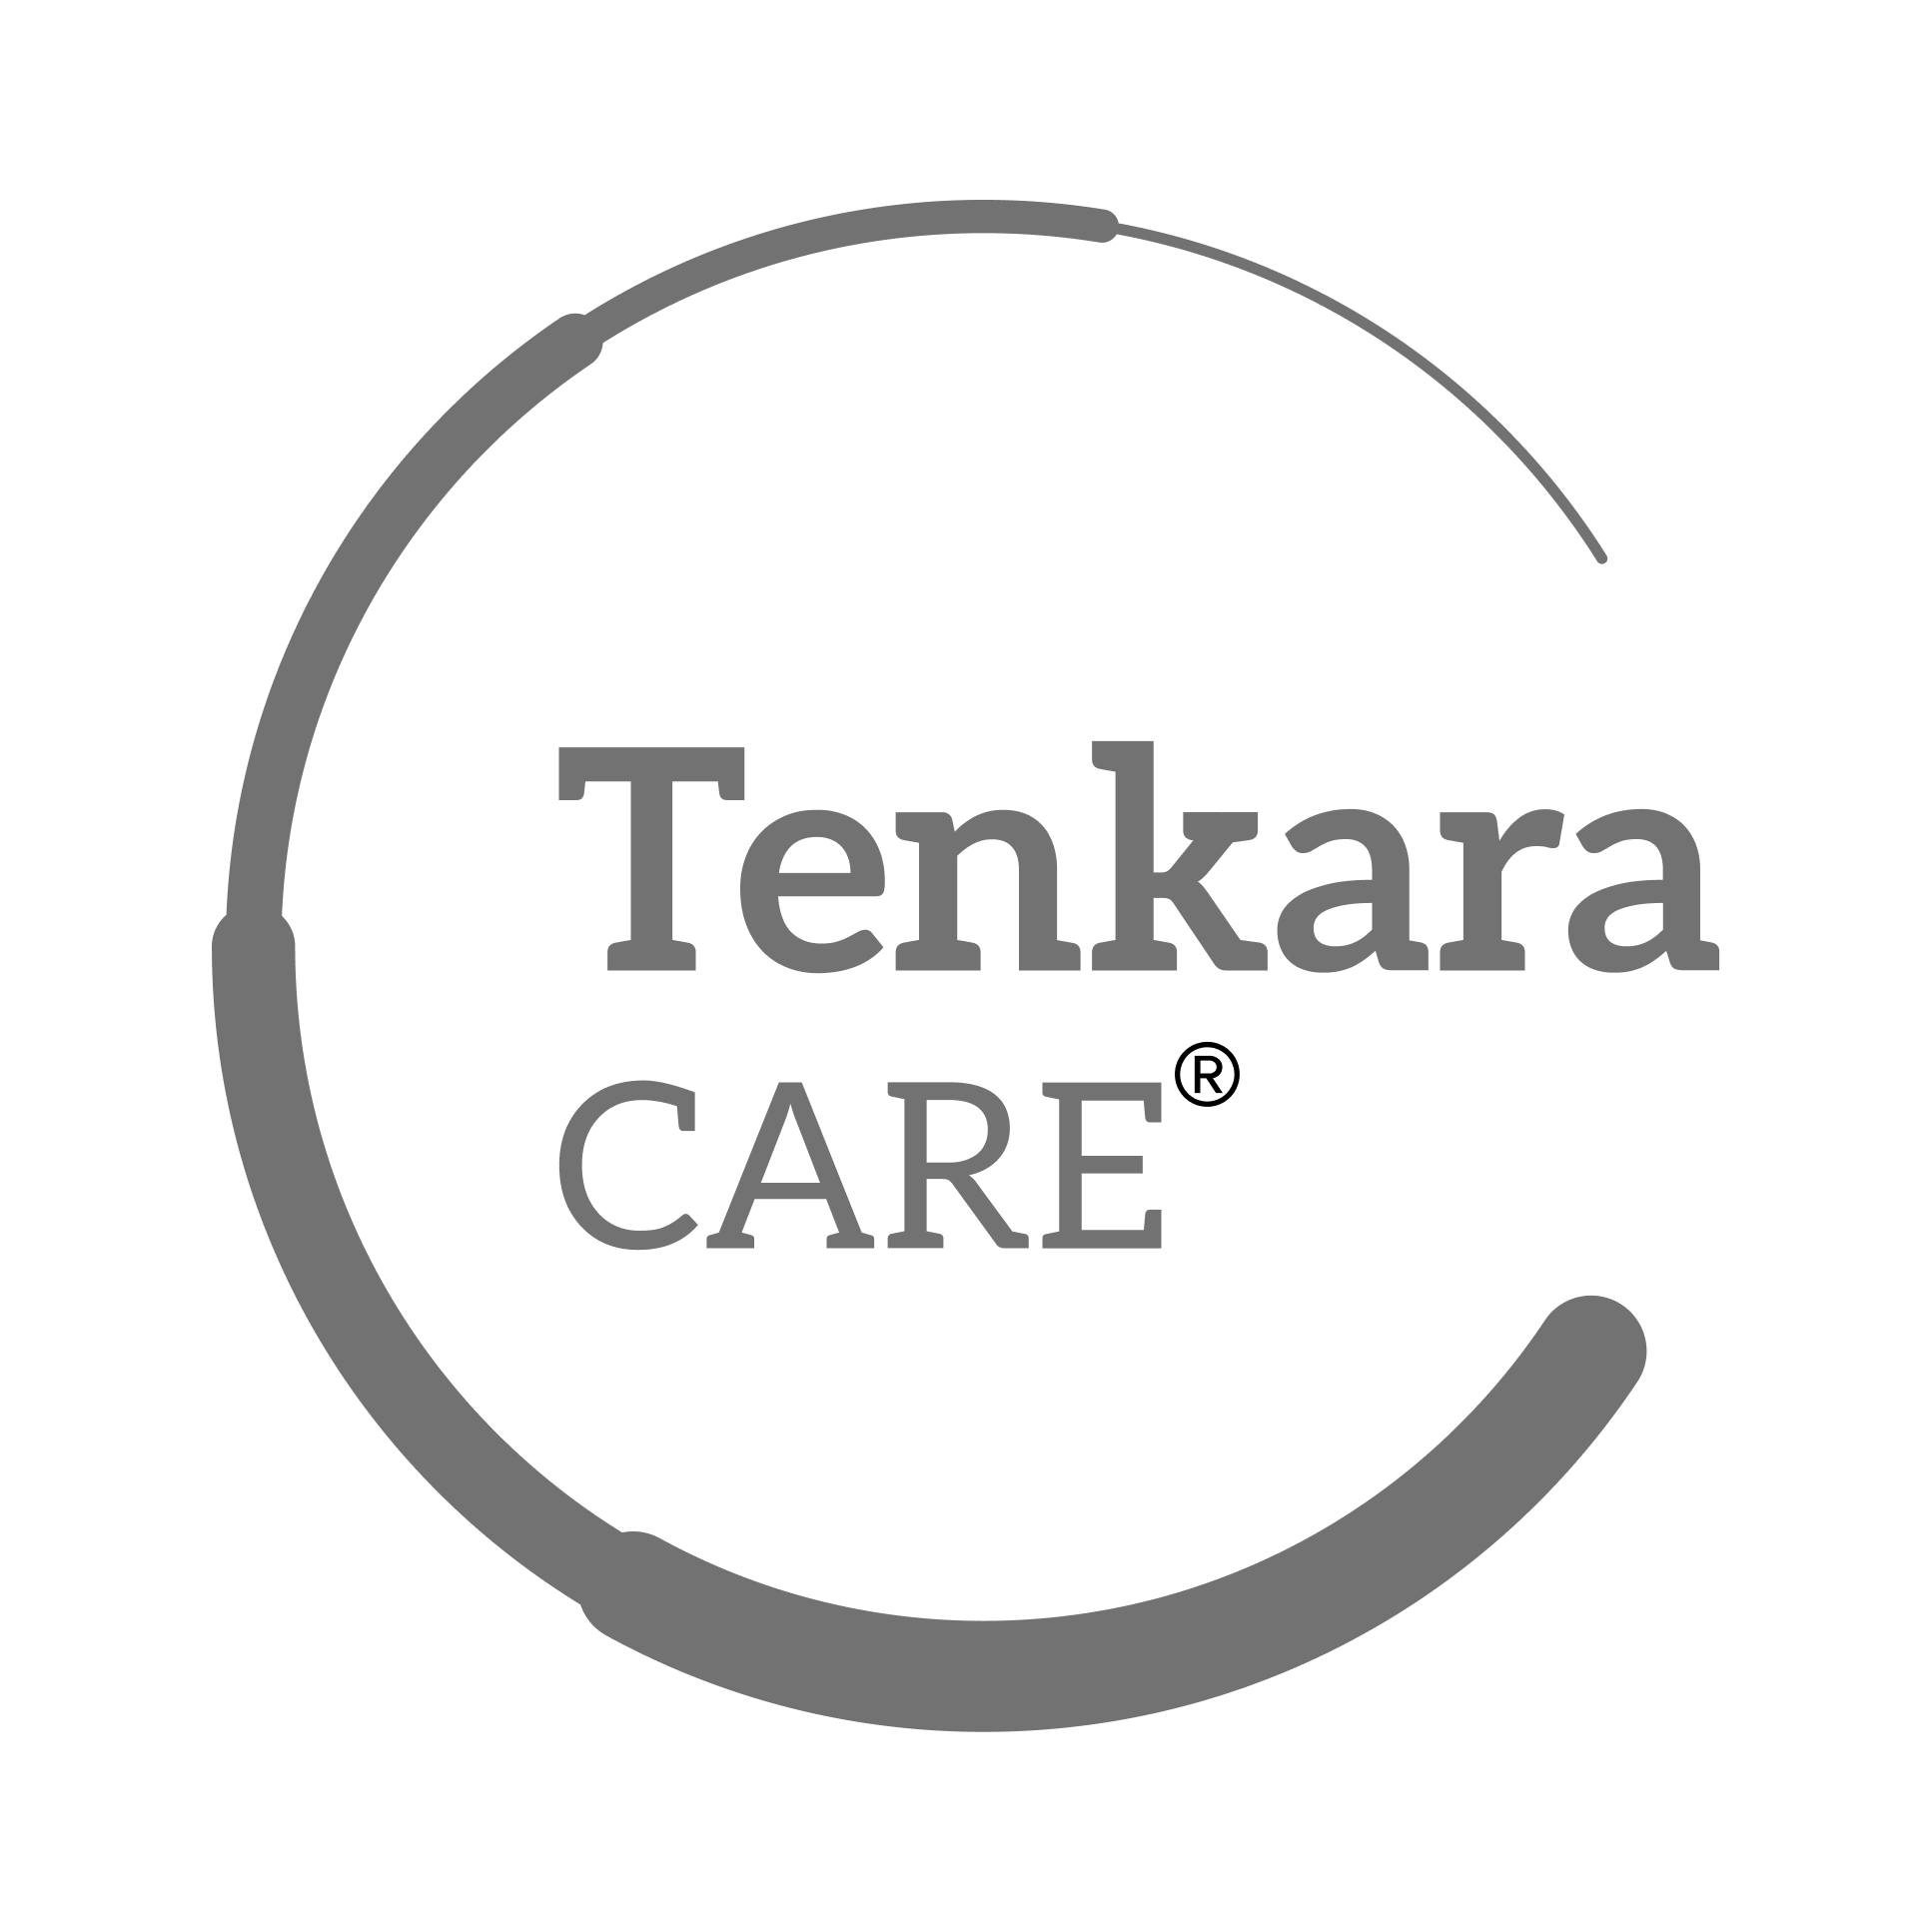 Tenkara Usa Care Logo.